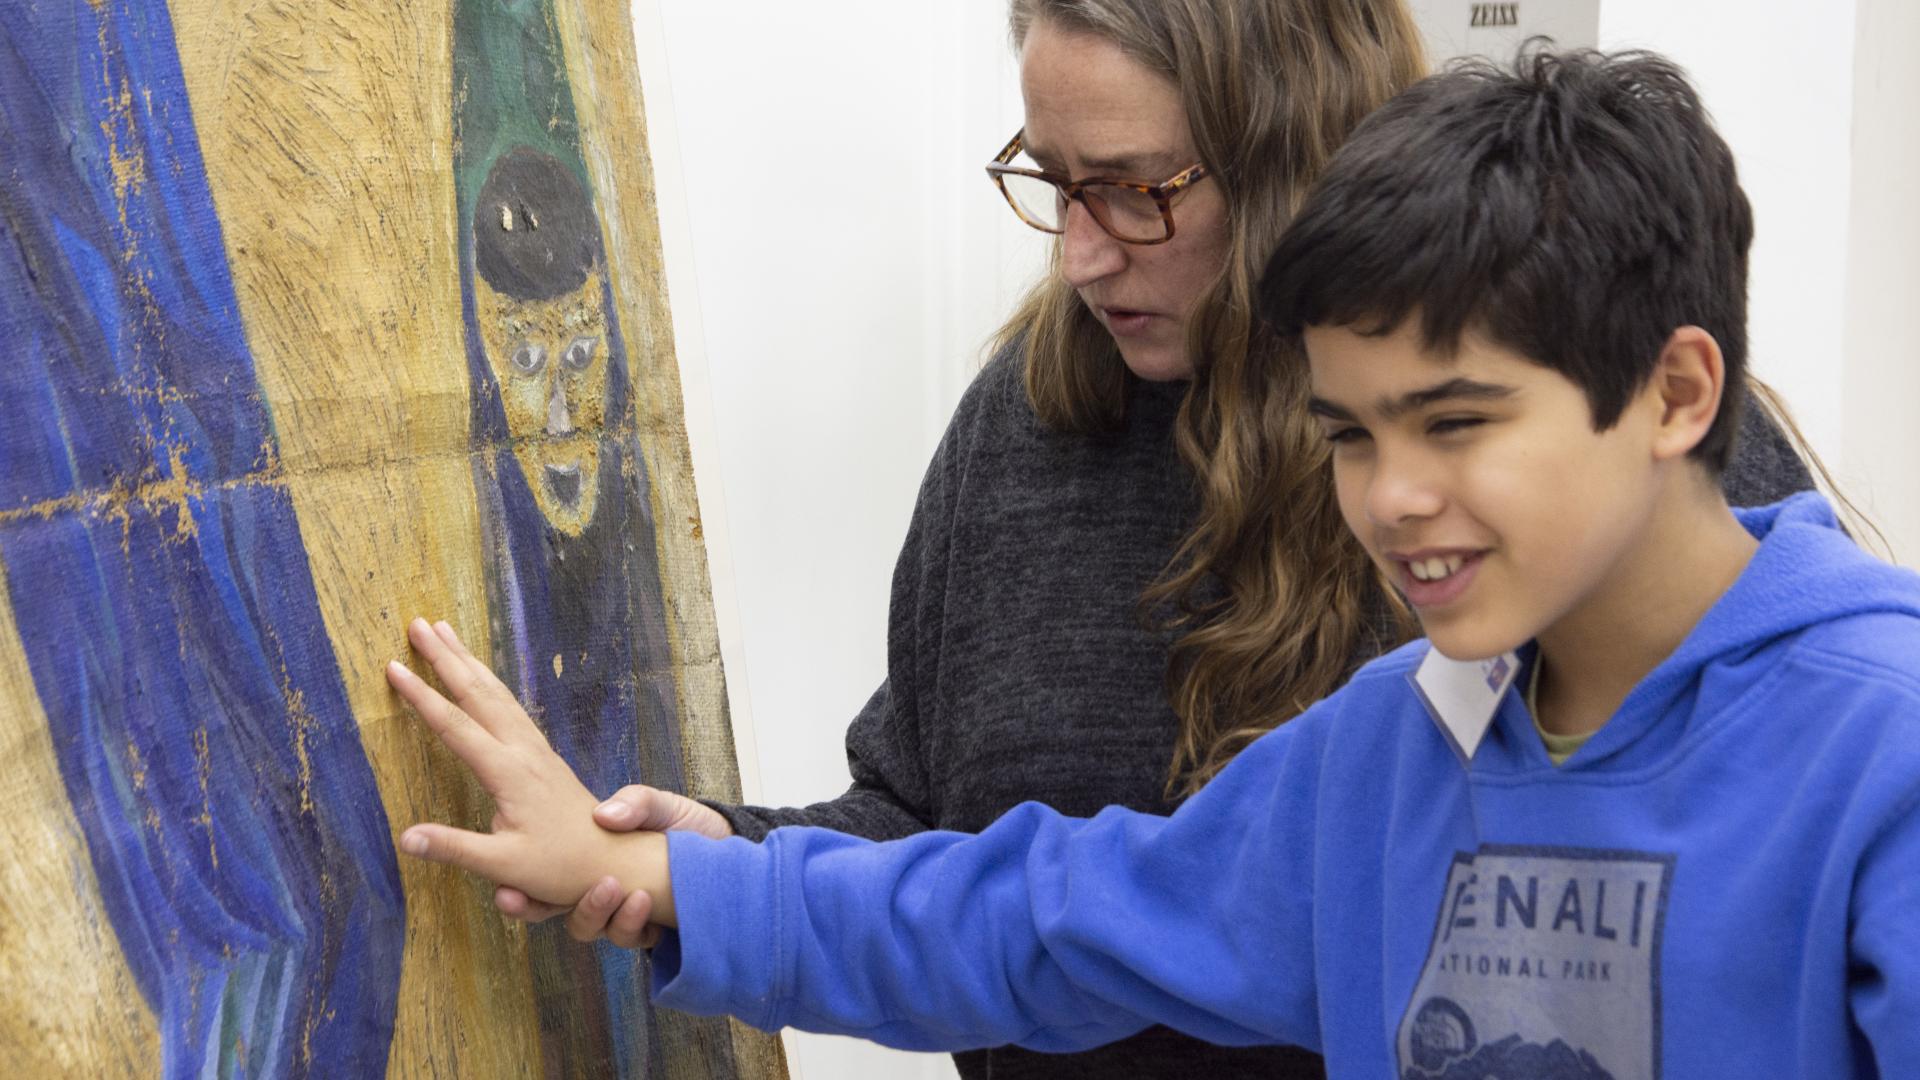 Carolina Ossa invitó a un niño no vidente a tocar la pintura Justice du Monde para que tuviera su experiencia perceptiva. (Archivo CNCR, Pérez, T., 2019)